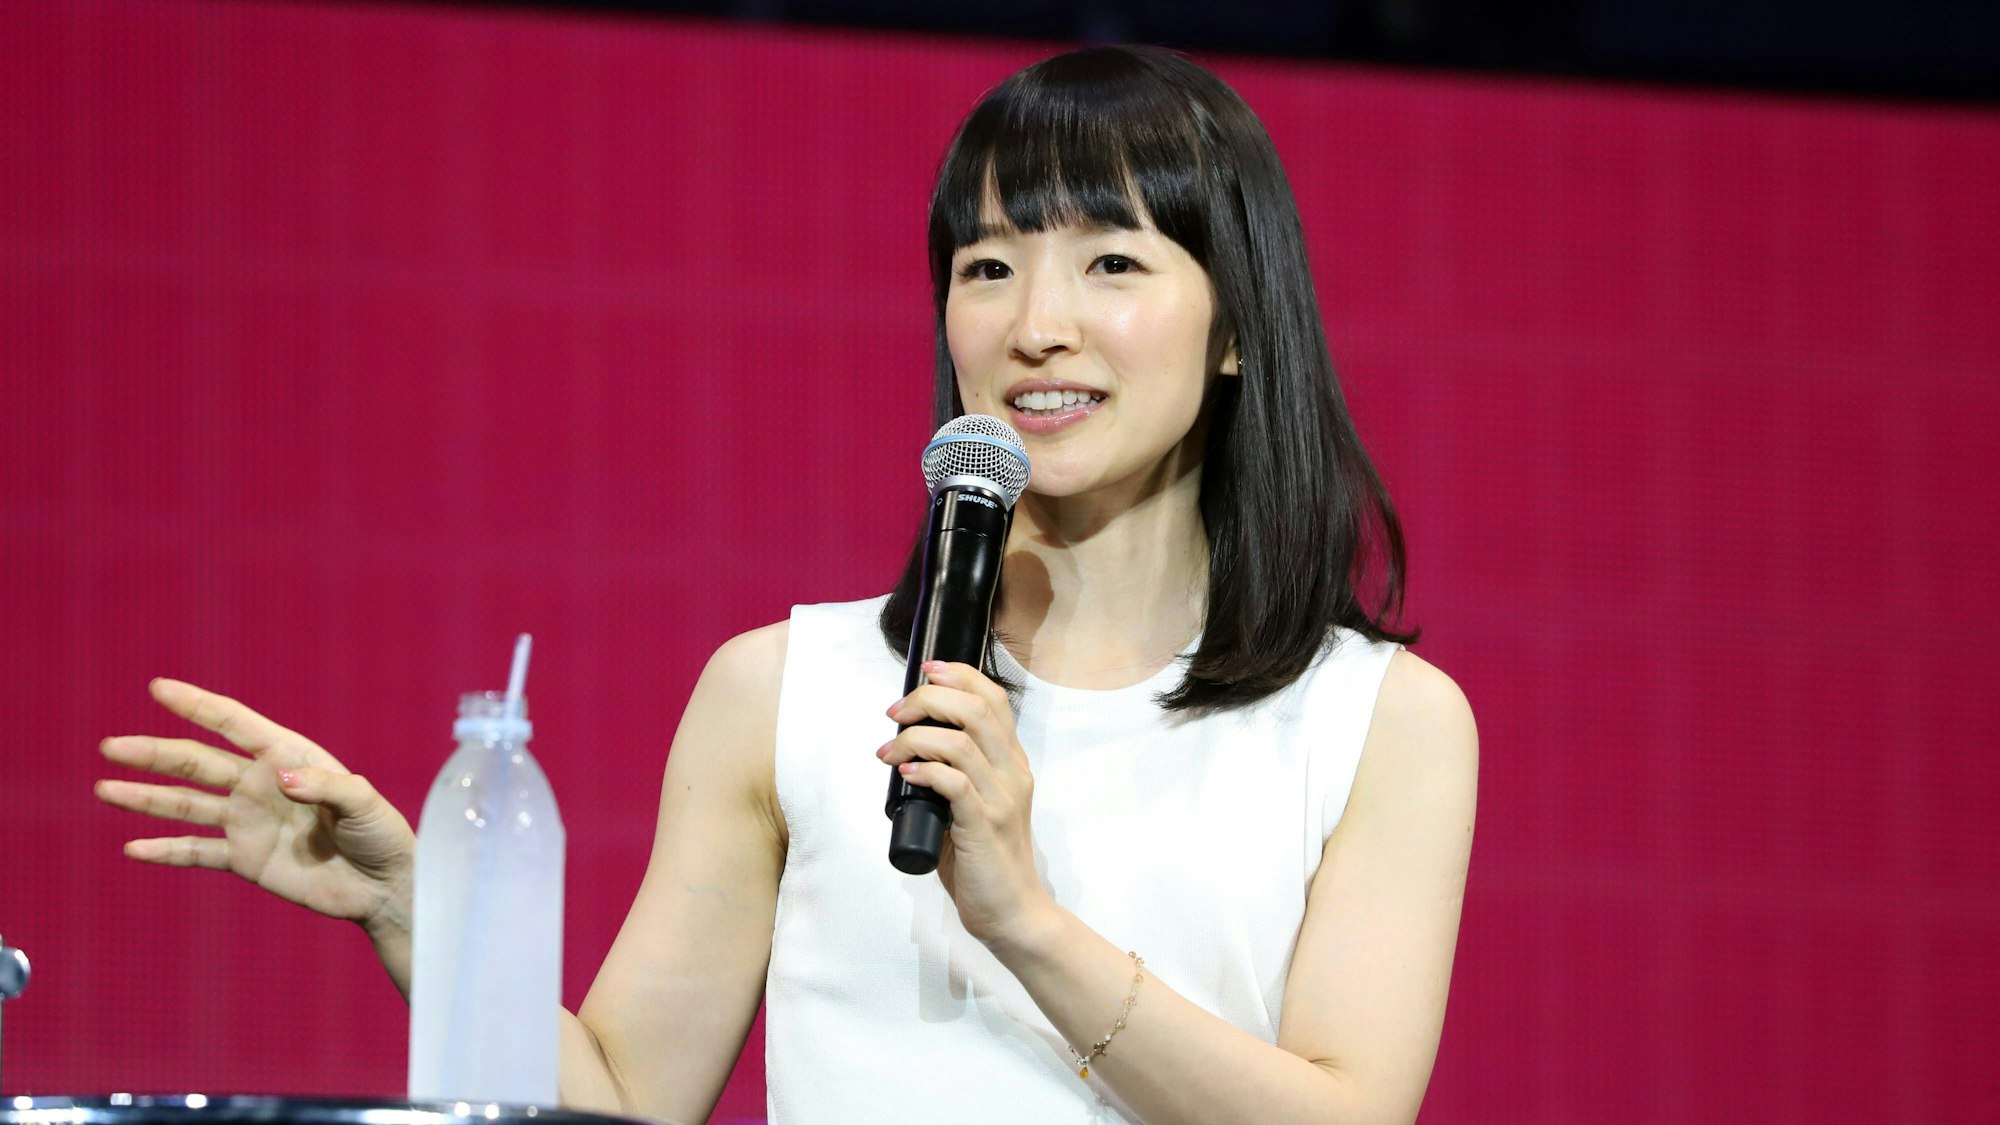 Aufräum-Expertin Marie Kondo 2019 bei einem Vortrag in Japan. Sie trägt ein weißes Oberteil, gestikuliert mit der rechten Hand und hält ein Mikrofon.